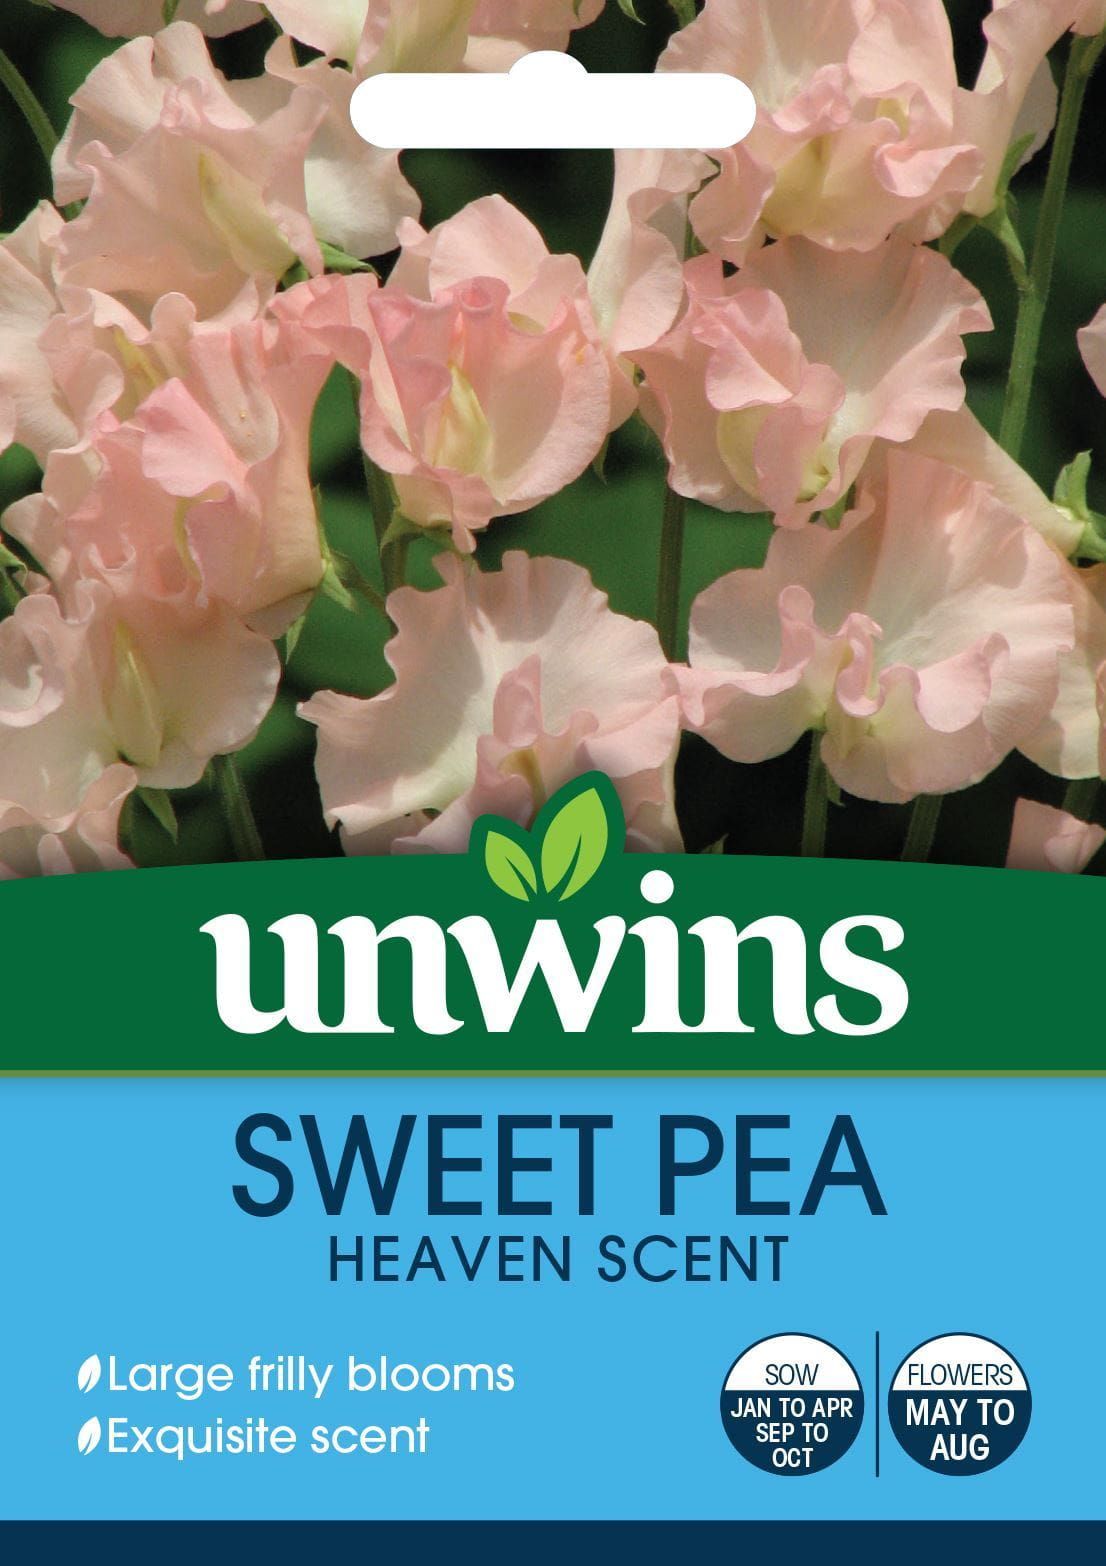 Unwins Sweet Pea Heaven Scent Seeds